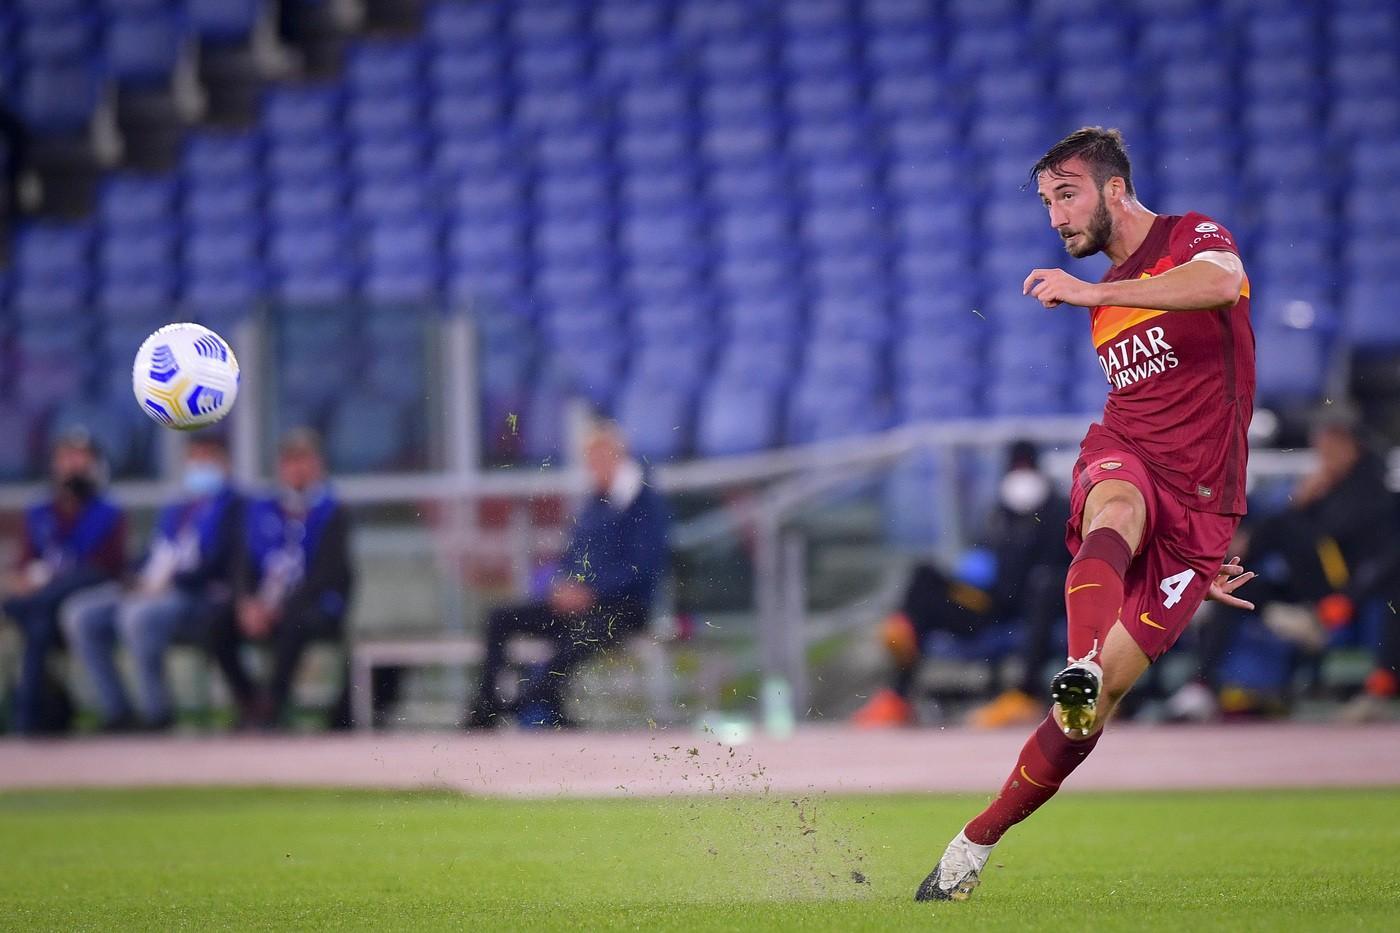 Le pagelle di Roma-Benevento 5-2: Pedro il migliore, Cristante risorge